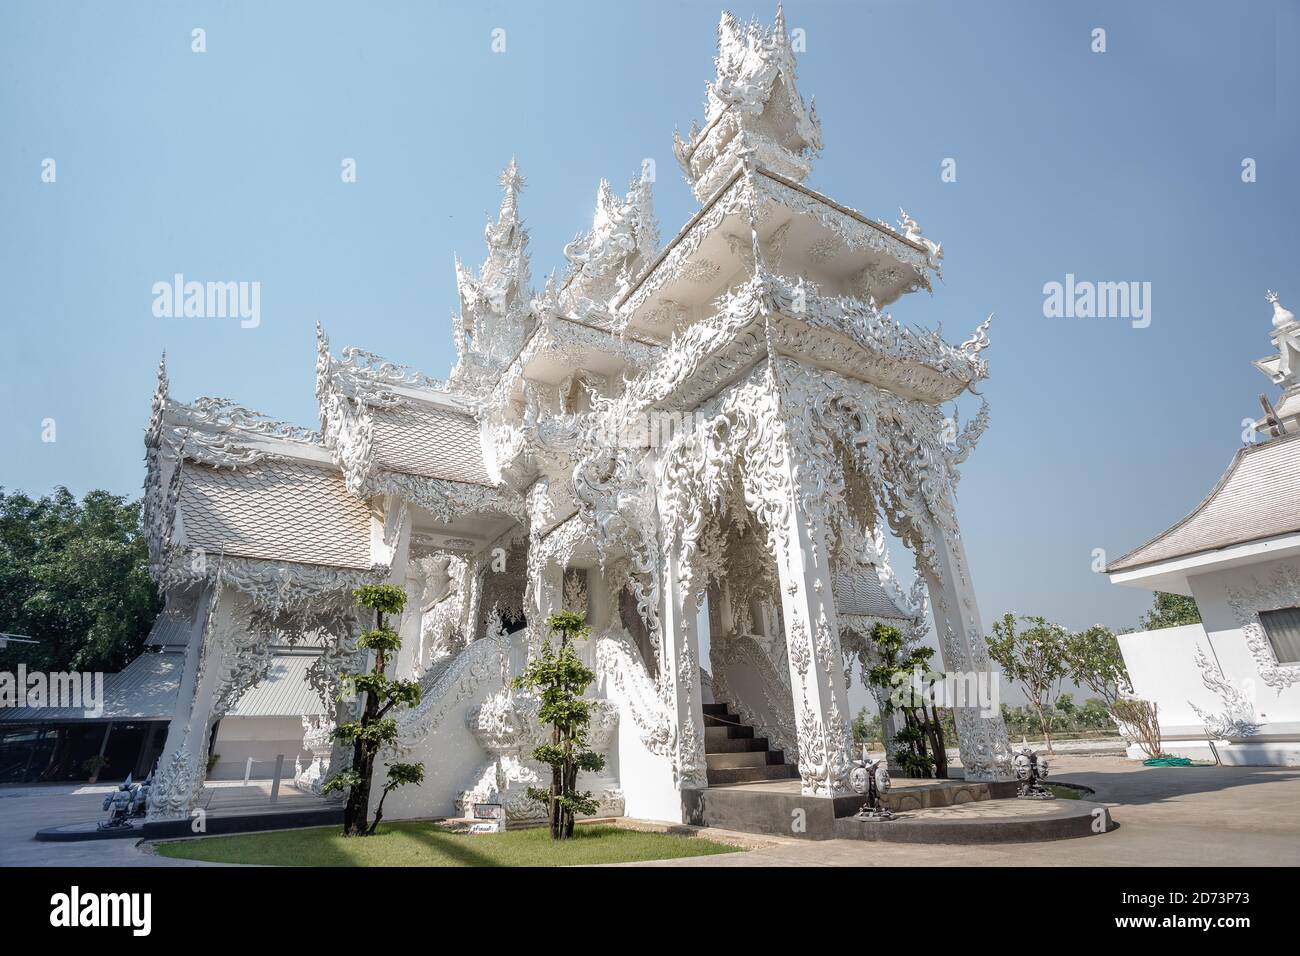 Wunderschöne verzierte weiße Tempel in Chiang Rai, Nord-Thailand. Wat Rong Khun (Weißer Tempel), ist ein zeitgenössischer unkonventioneller buddhistischer Tempel Stockfoto